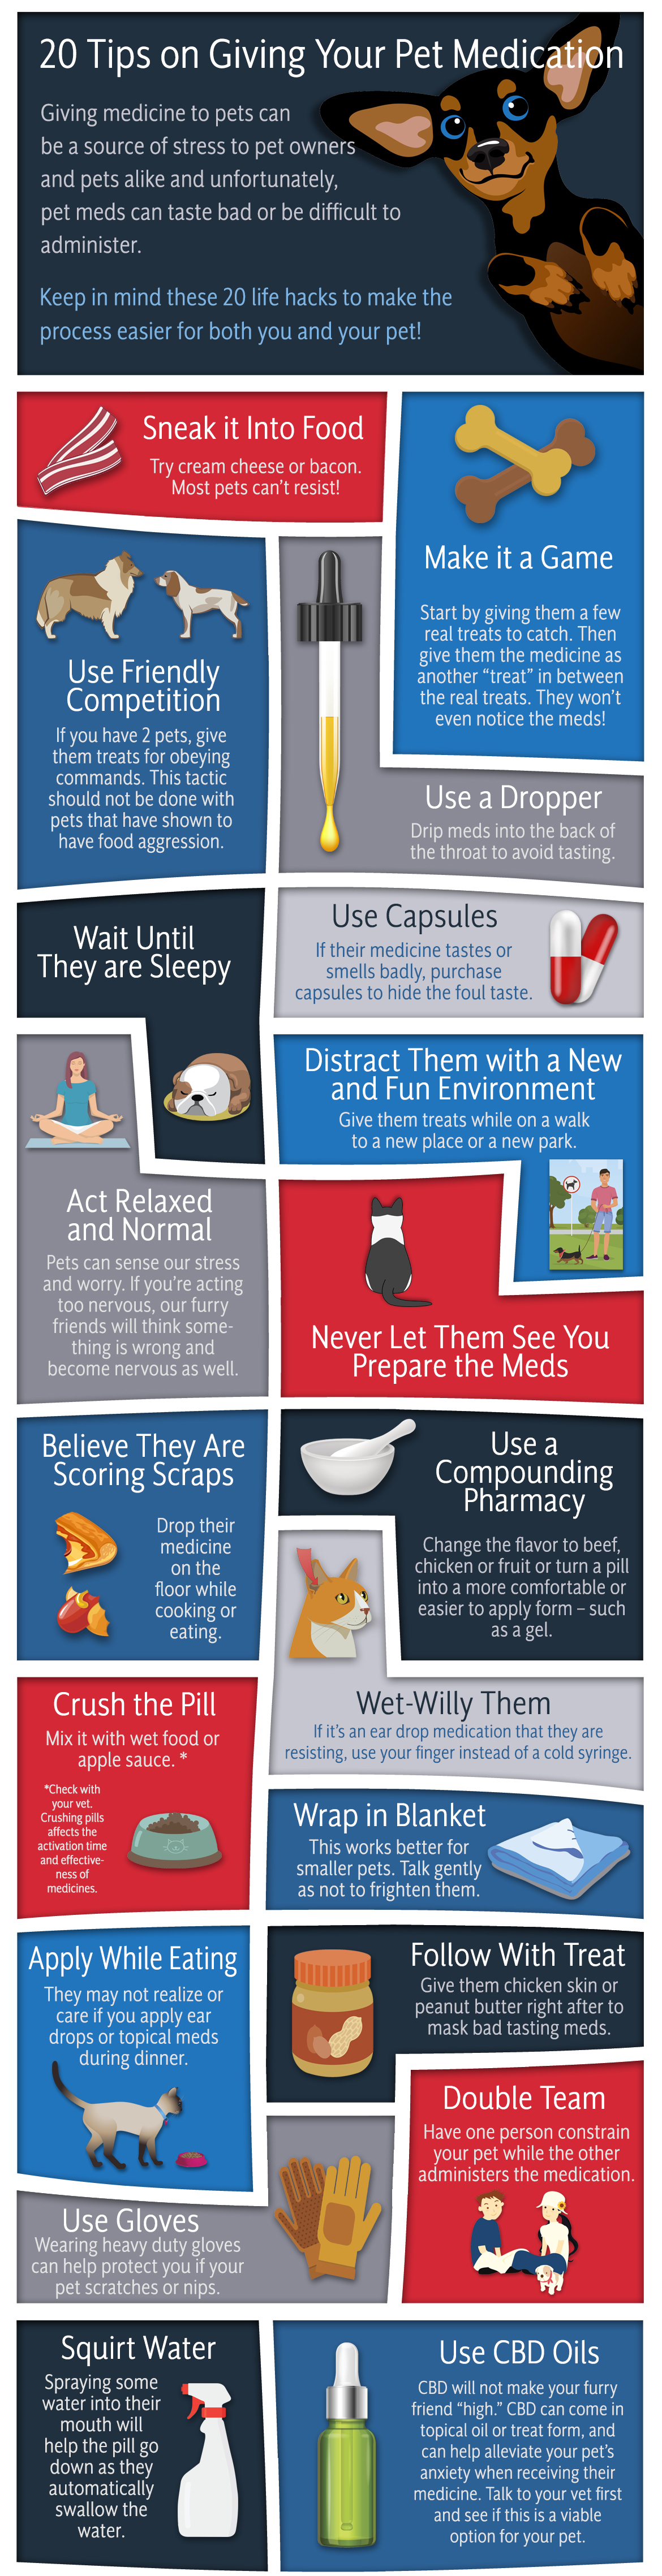 Pet Medication Tips